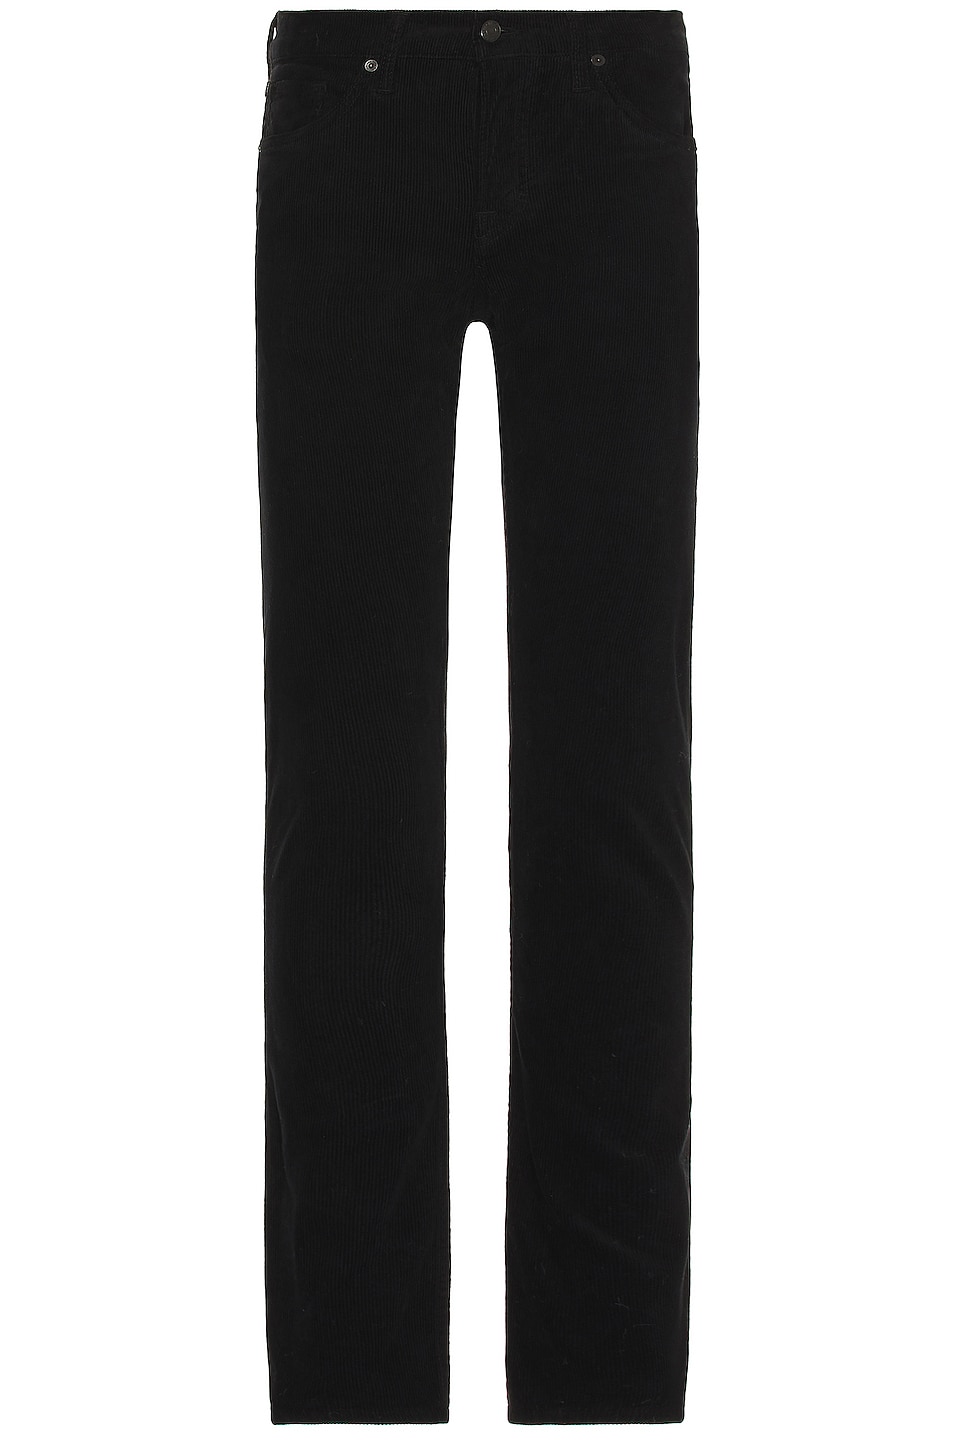 Image 1 of TOM FORD Corduroy Slim Fit Pant in Black